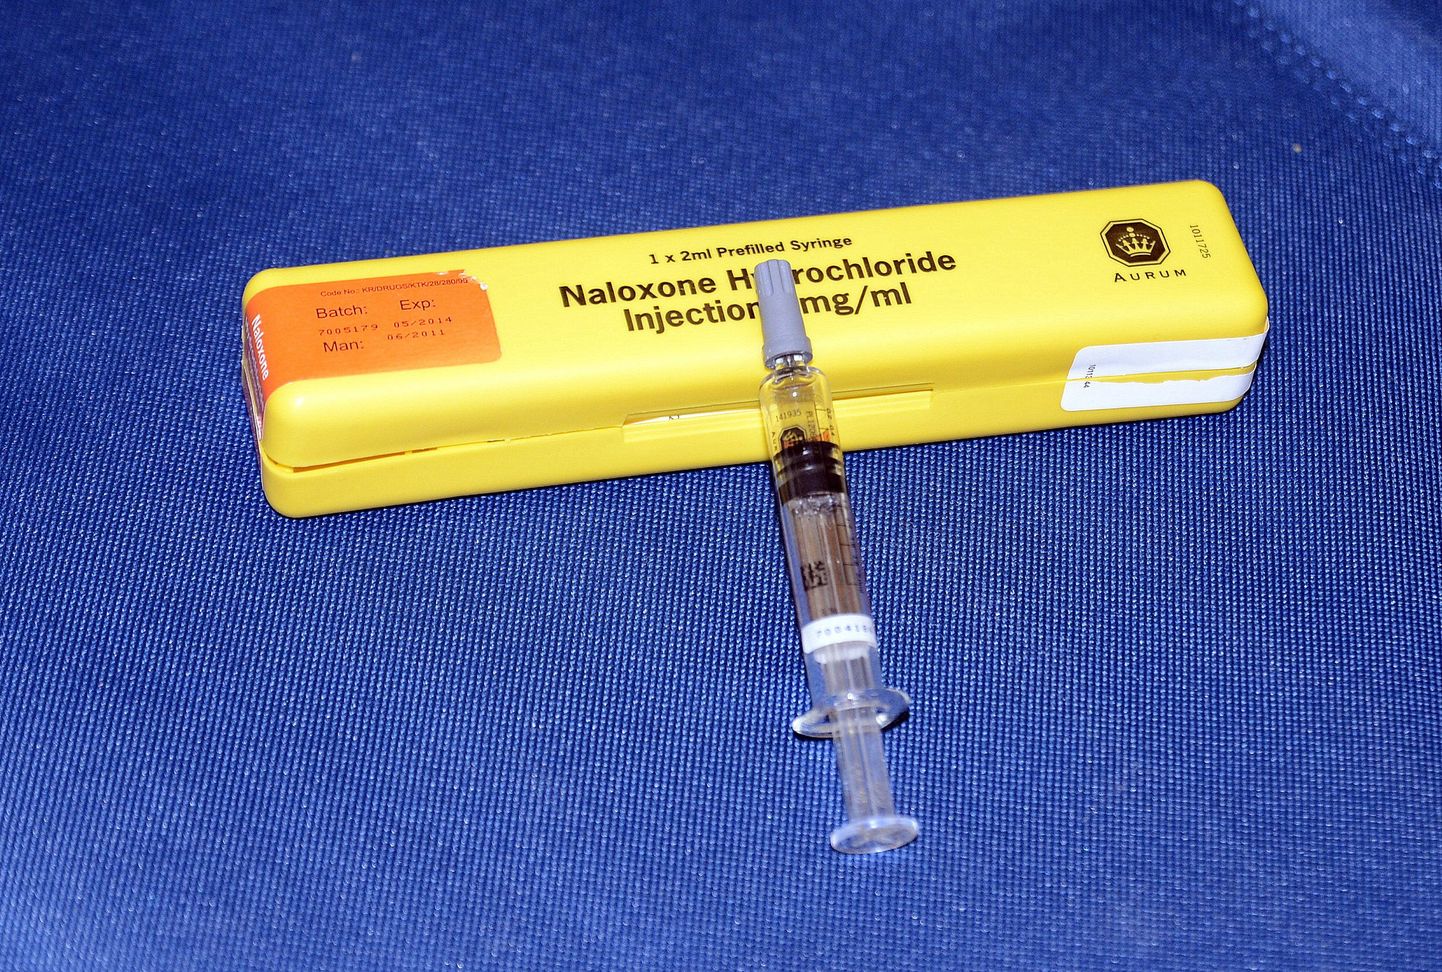 Налоксон – это простой в использовании антидот, спасающий жизнь в случае передозировки героином или рецептурными опиоидами.